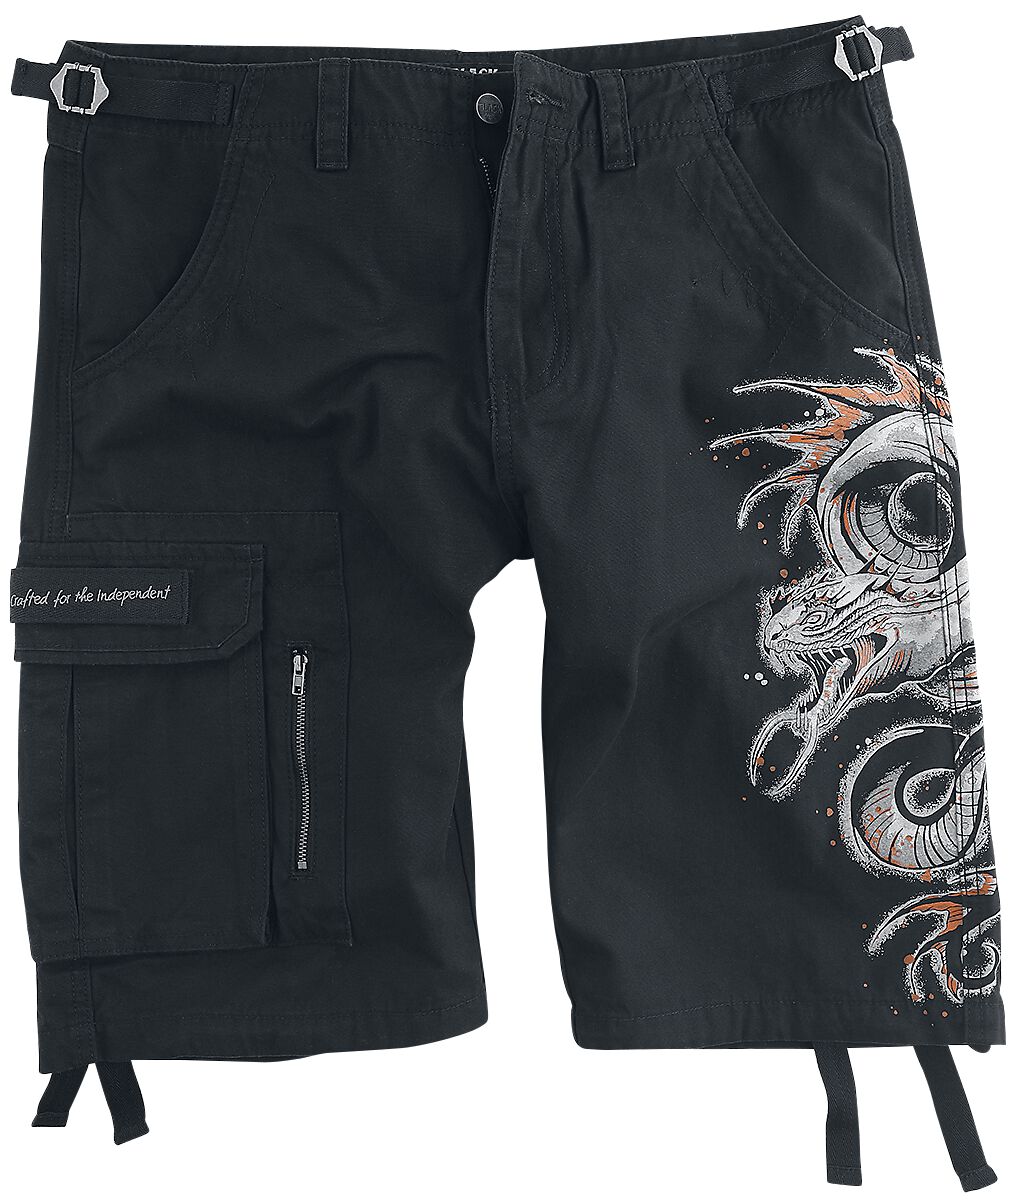 Black Premium by EMP Short - Shorts with Dragon Print - S bis XXL - für Männer - Größe XXL - schwarz - Männer - male